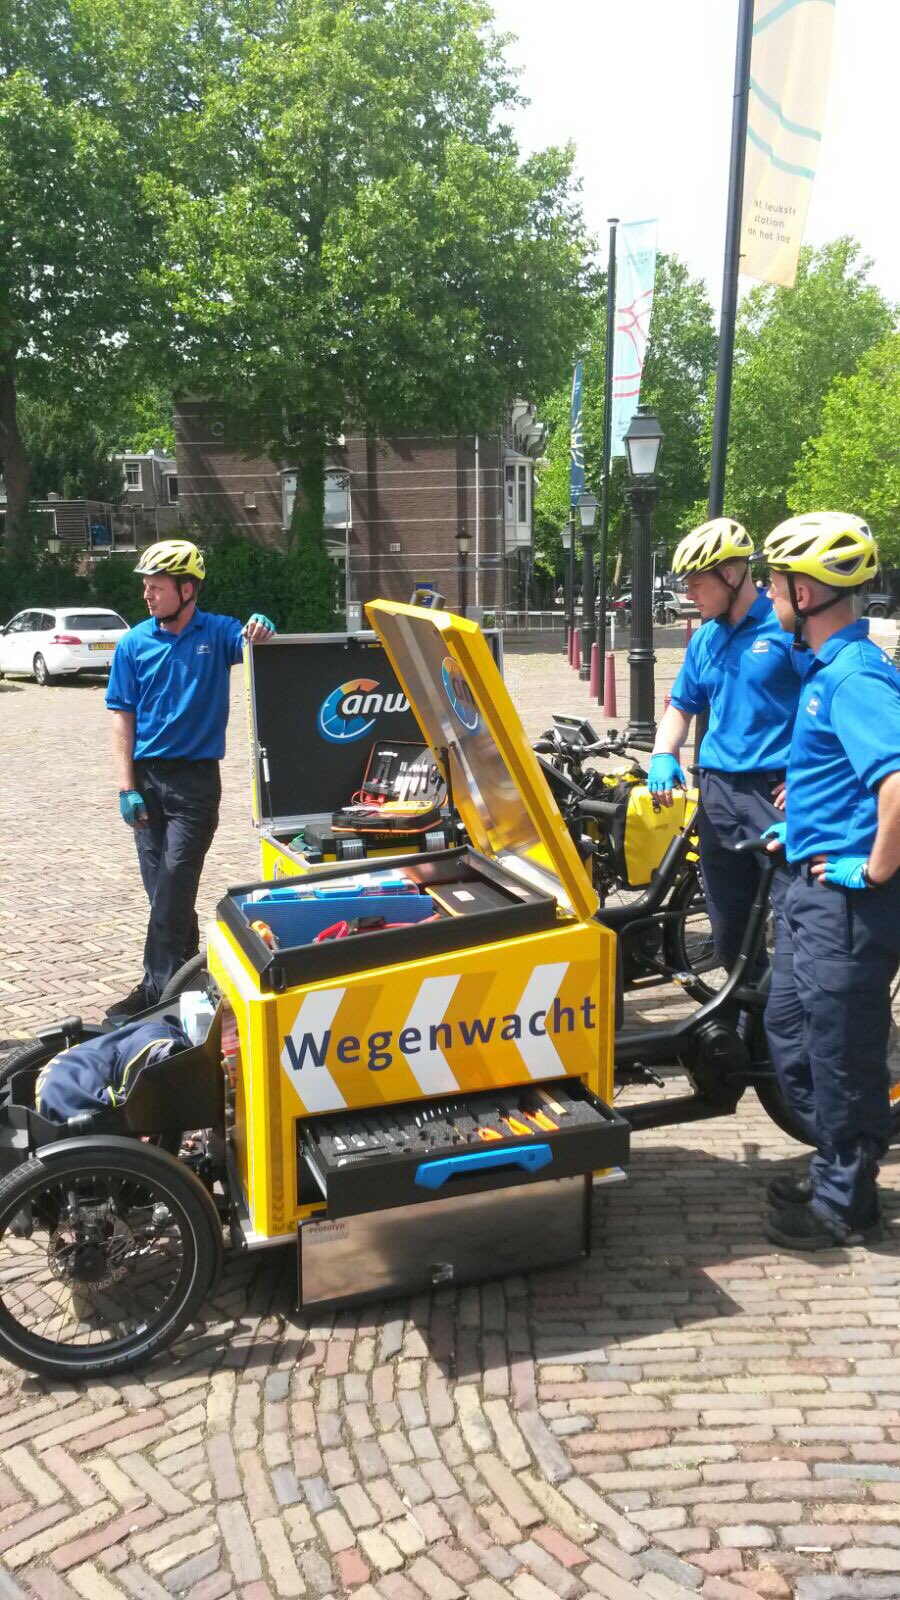 تويتر \ anwb على تويتر: ook wegenwacht op de fiets in Rotterdam Utrecht: #wegenwacht #fiets https://t.co/rjqI4KAoez"